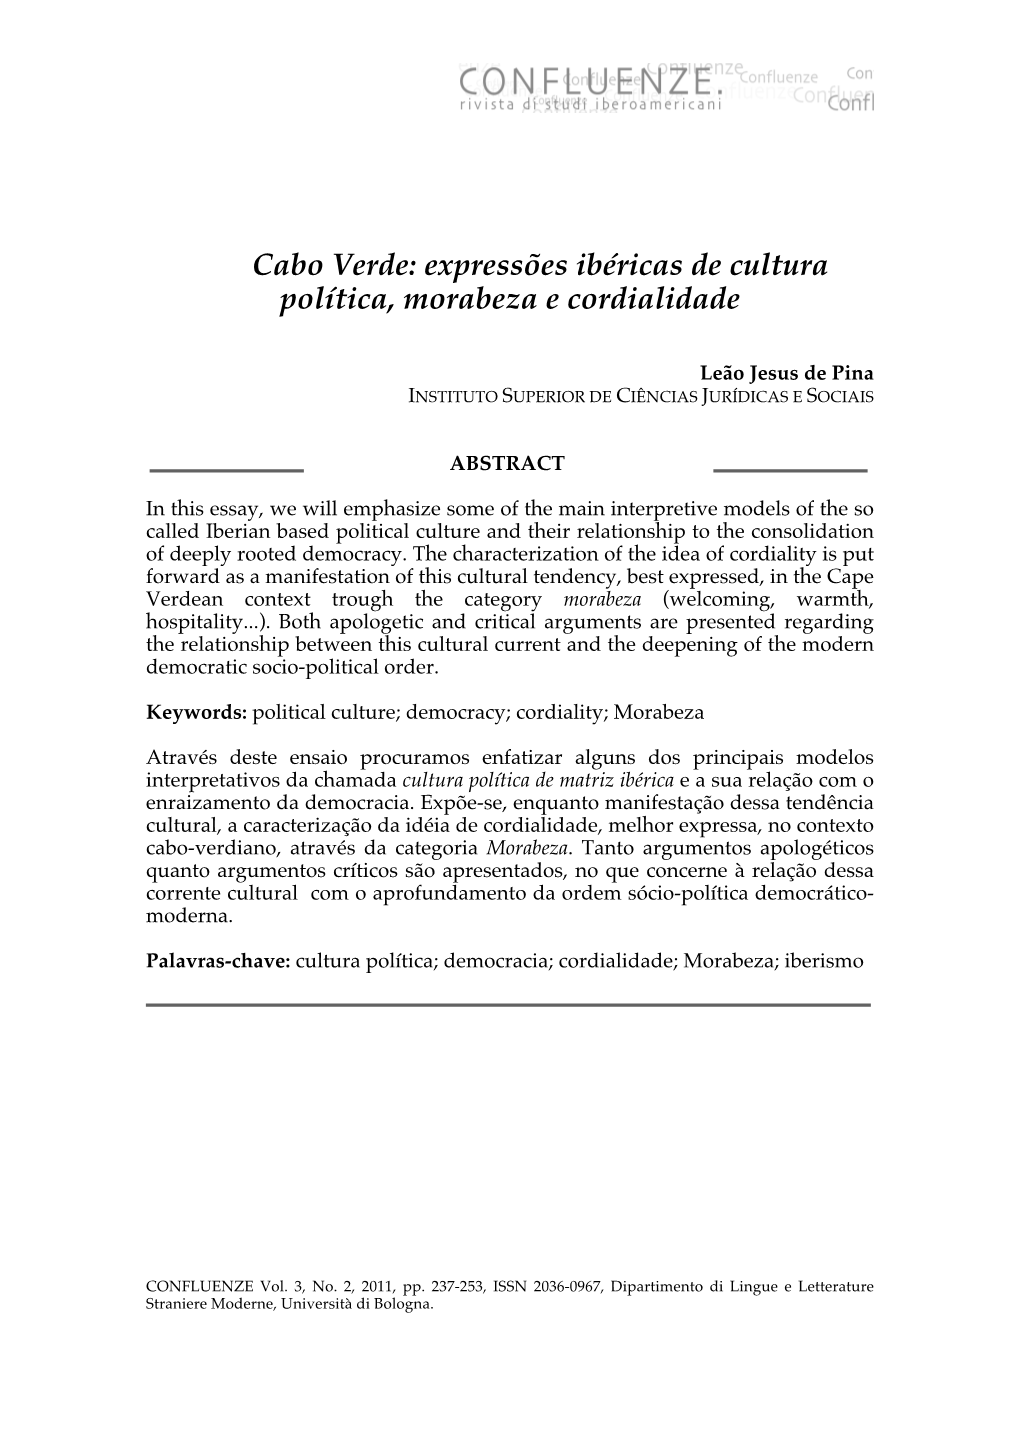 Cabo Verde: Expressões Ibéricas De Cultura Política, Morabeza E Cordialidade